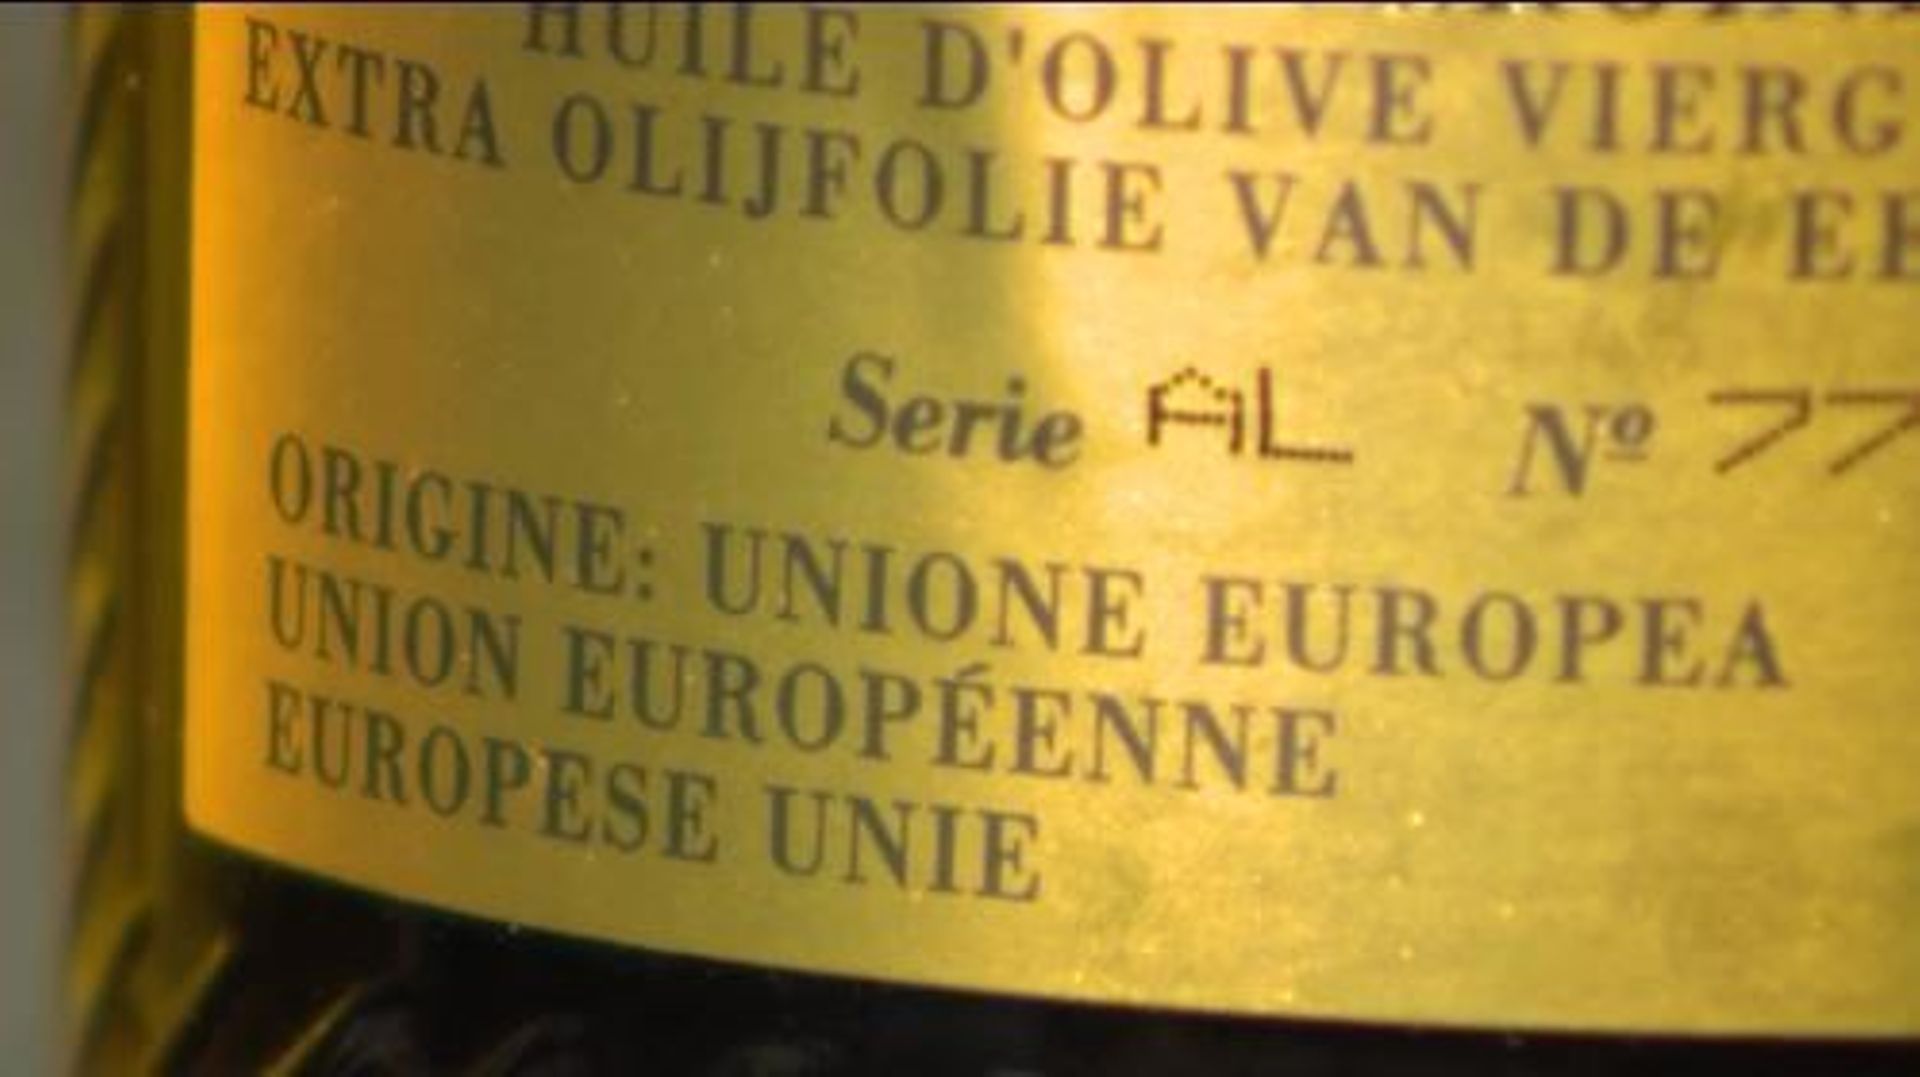 Origine de l'huile d'olive Carapelli : Union européenne